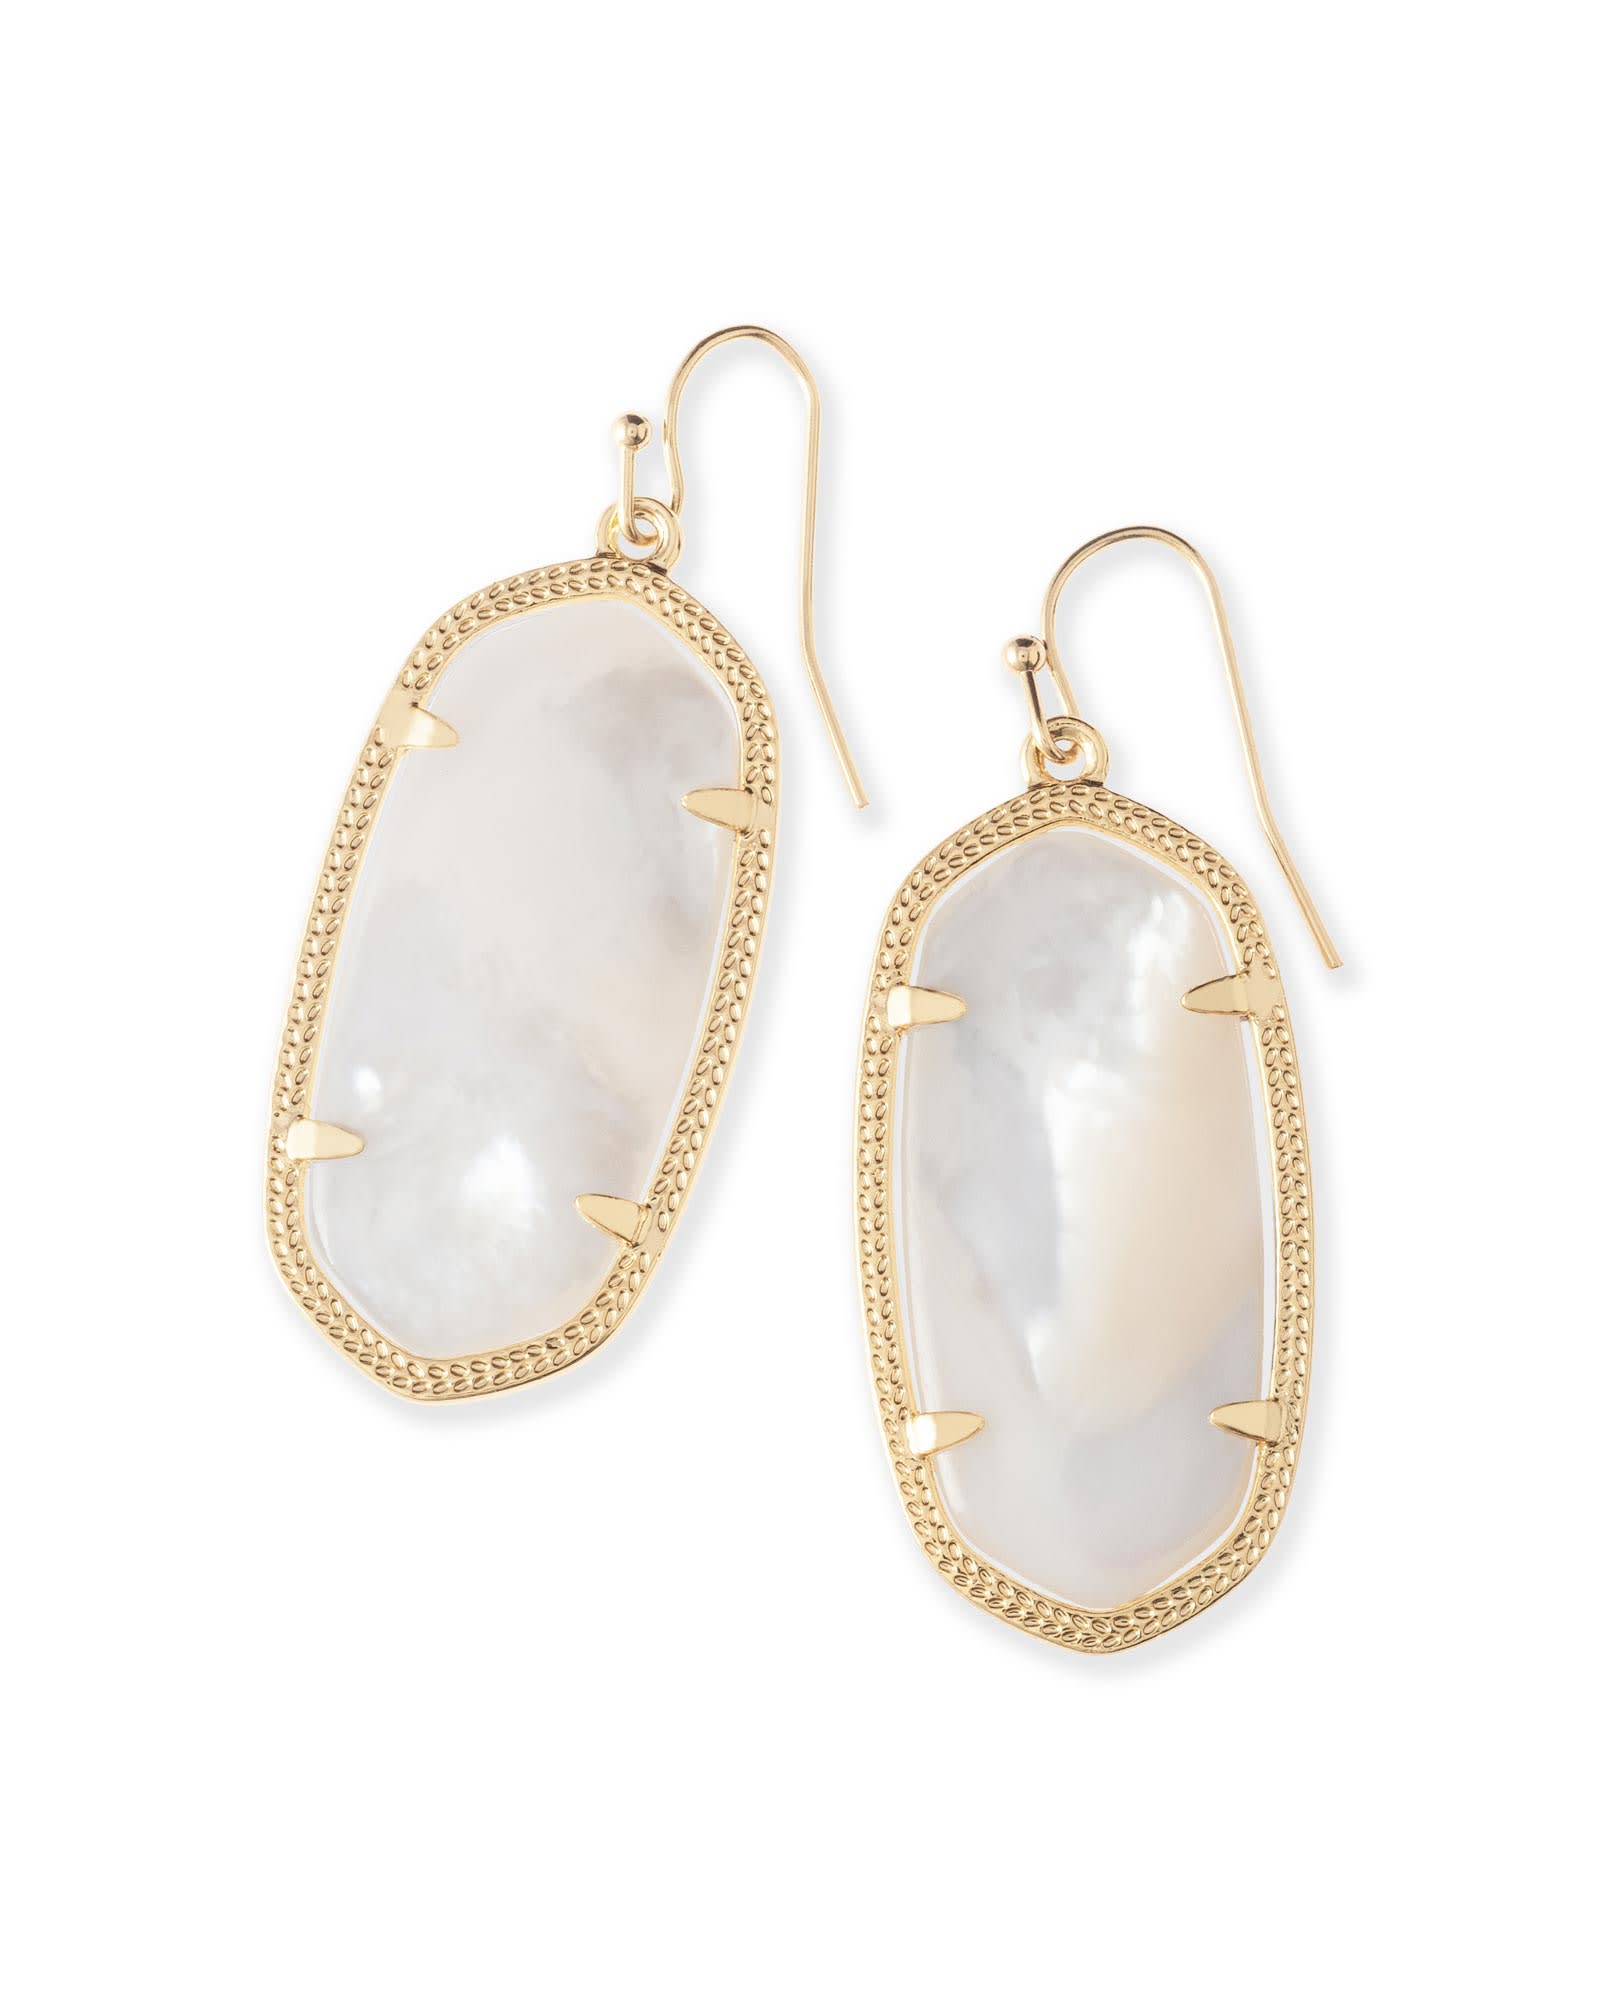 Elle Gold Drop Earrings in Ivory Pearl | Kendra Scott